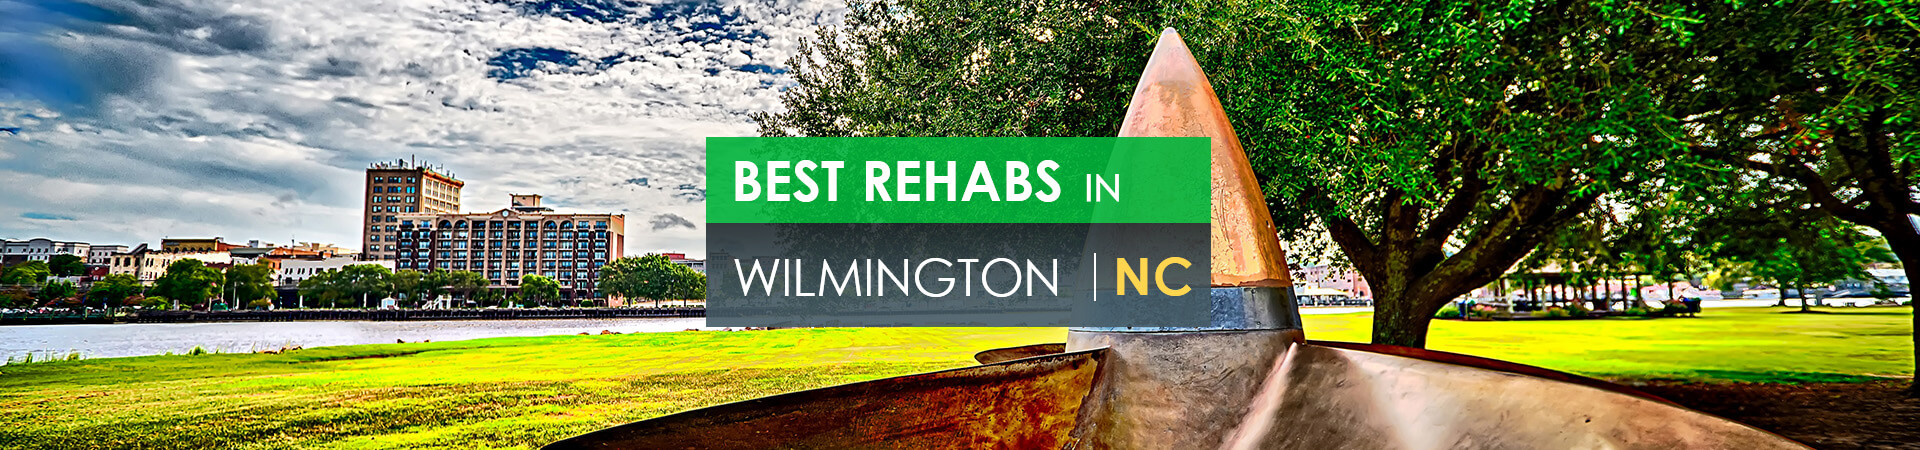 Best rehabs in Wilmington, NC